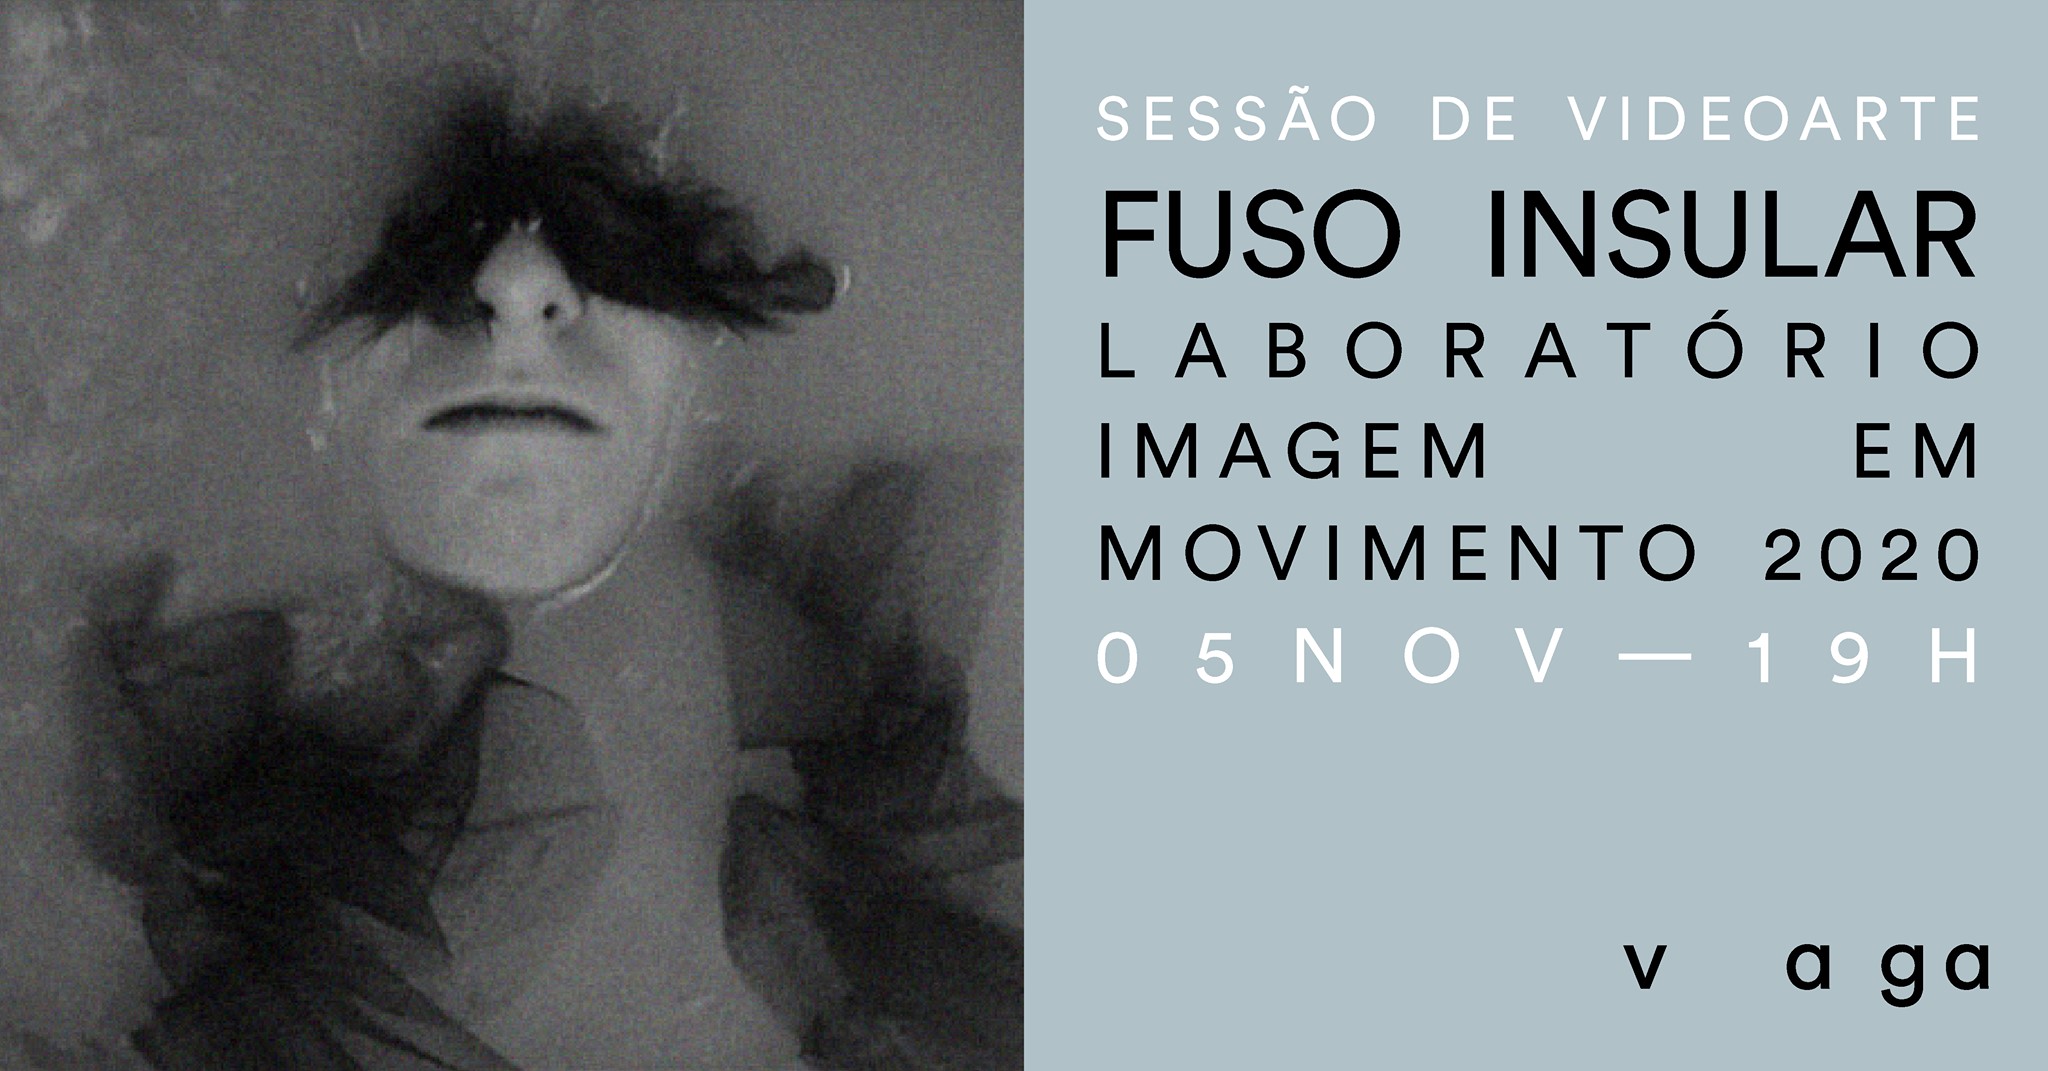 Sessão de videoarte com FUSO INSULAR — Laboratório Imagem em Movimento 2020